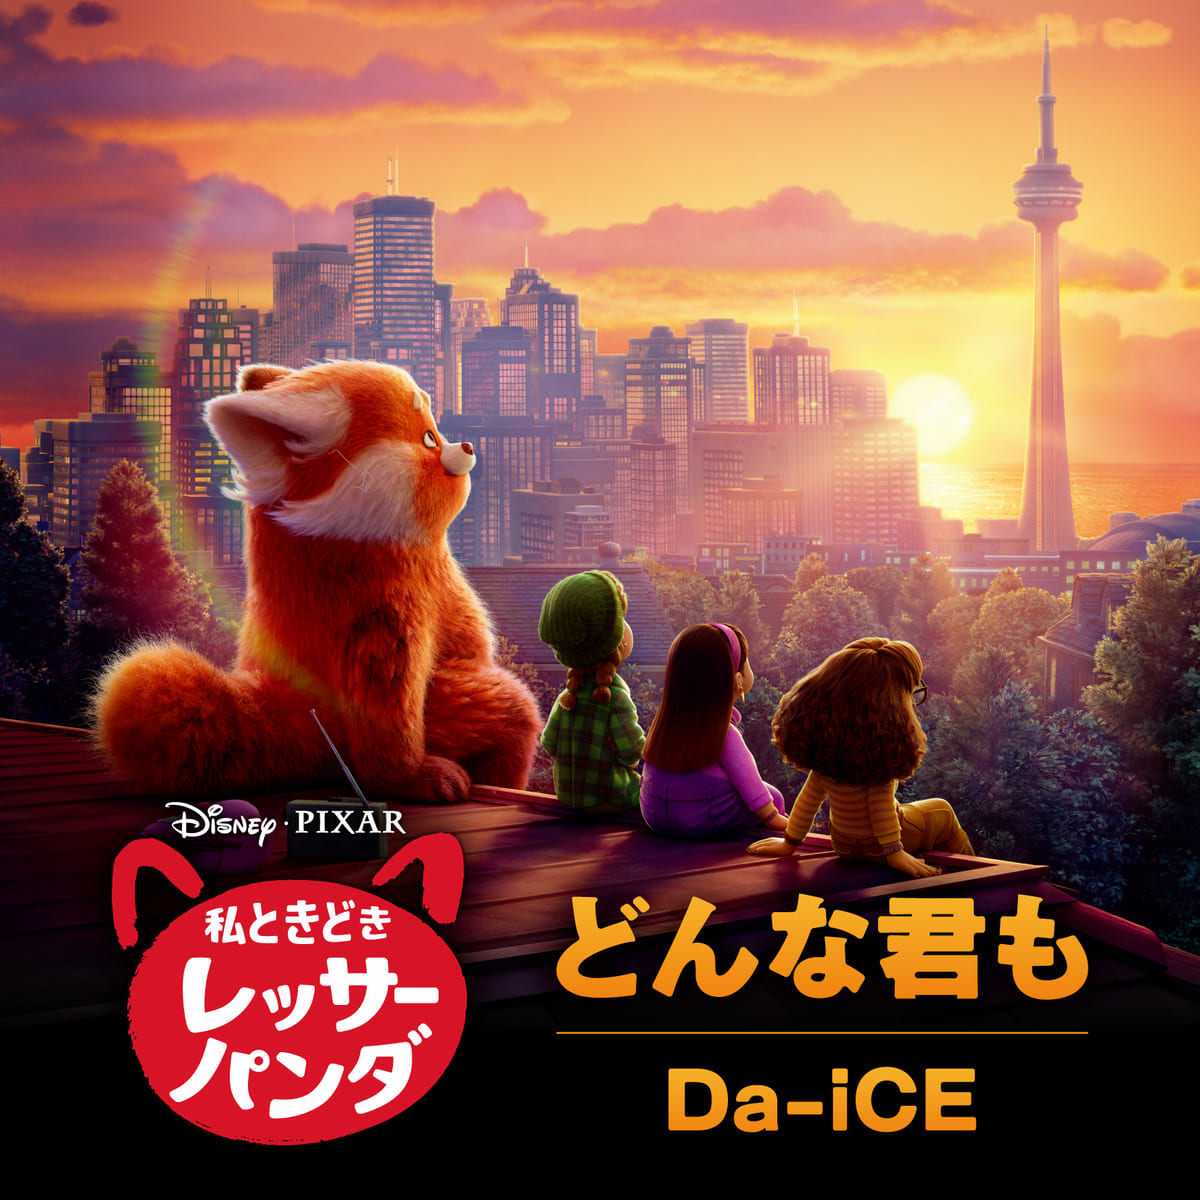 ディズニー&ピクサー映画『私ときどきレッサーパンダ』日本版エンドソング「どんな君も」配信スタート